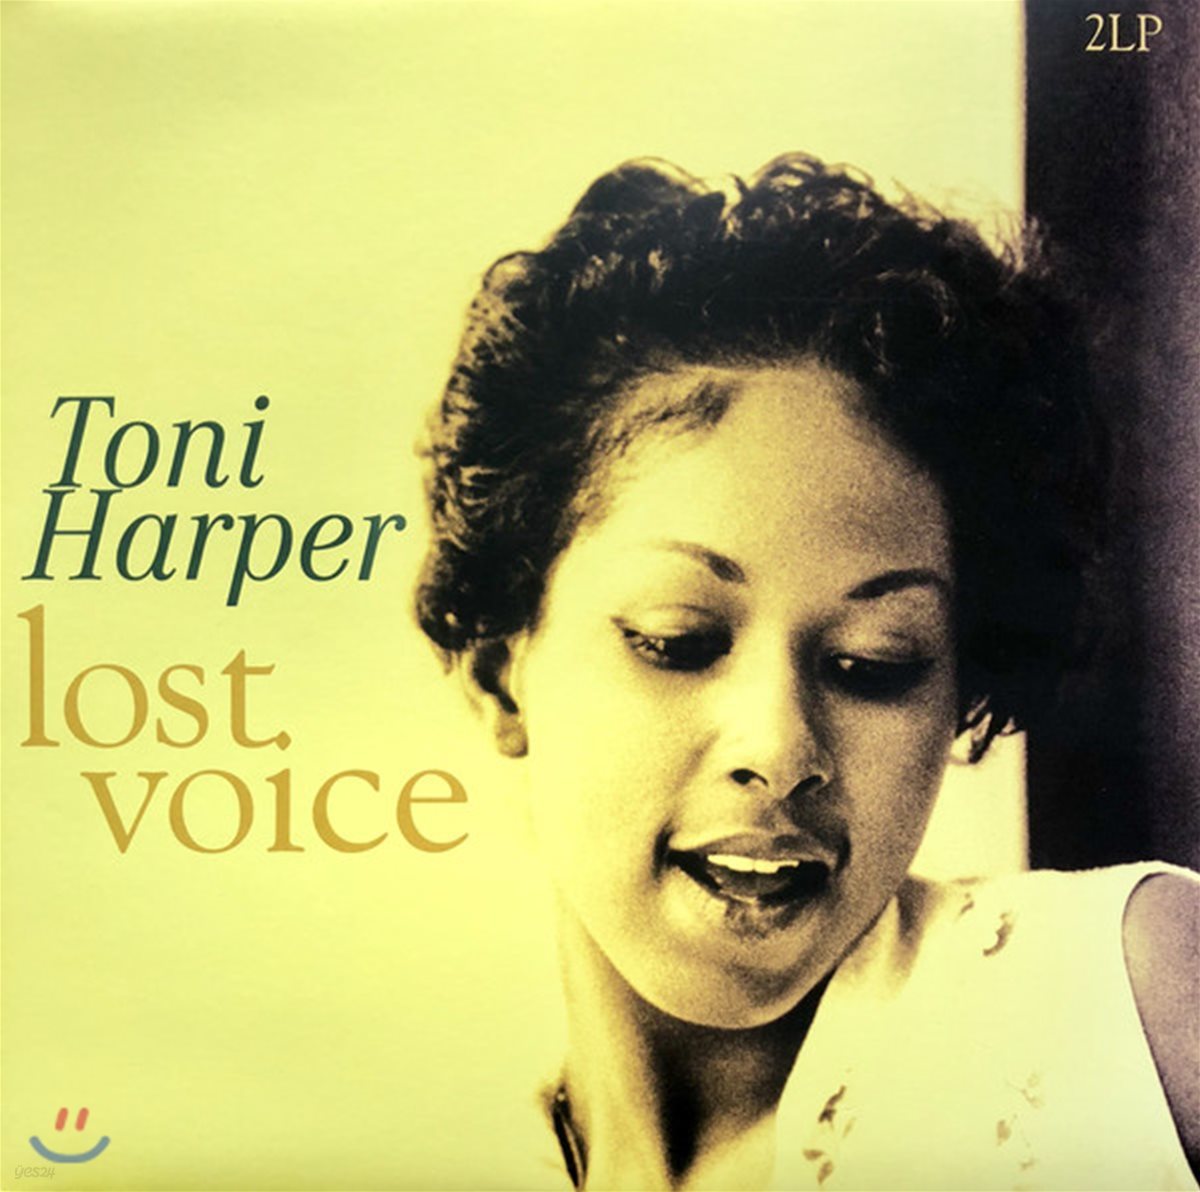 Toni Harper - Lost Voice [2LP]